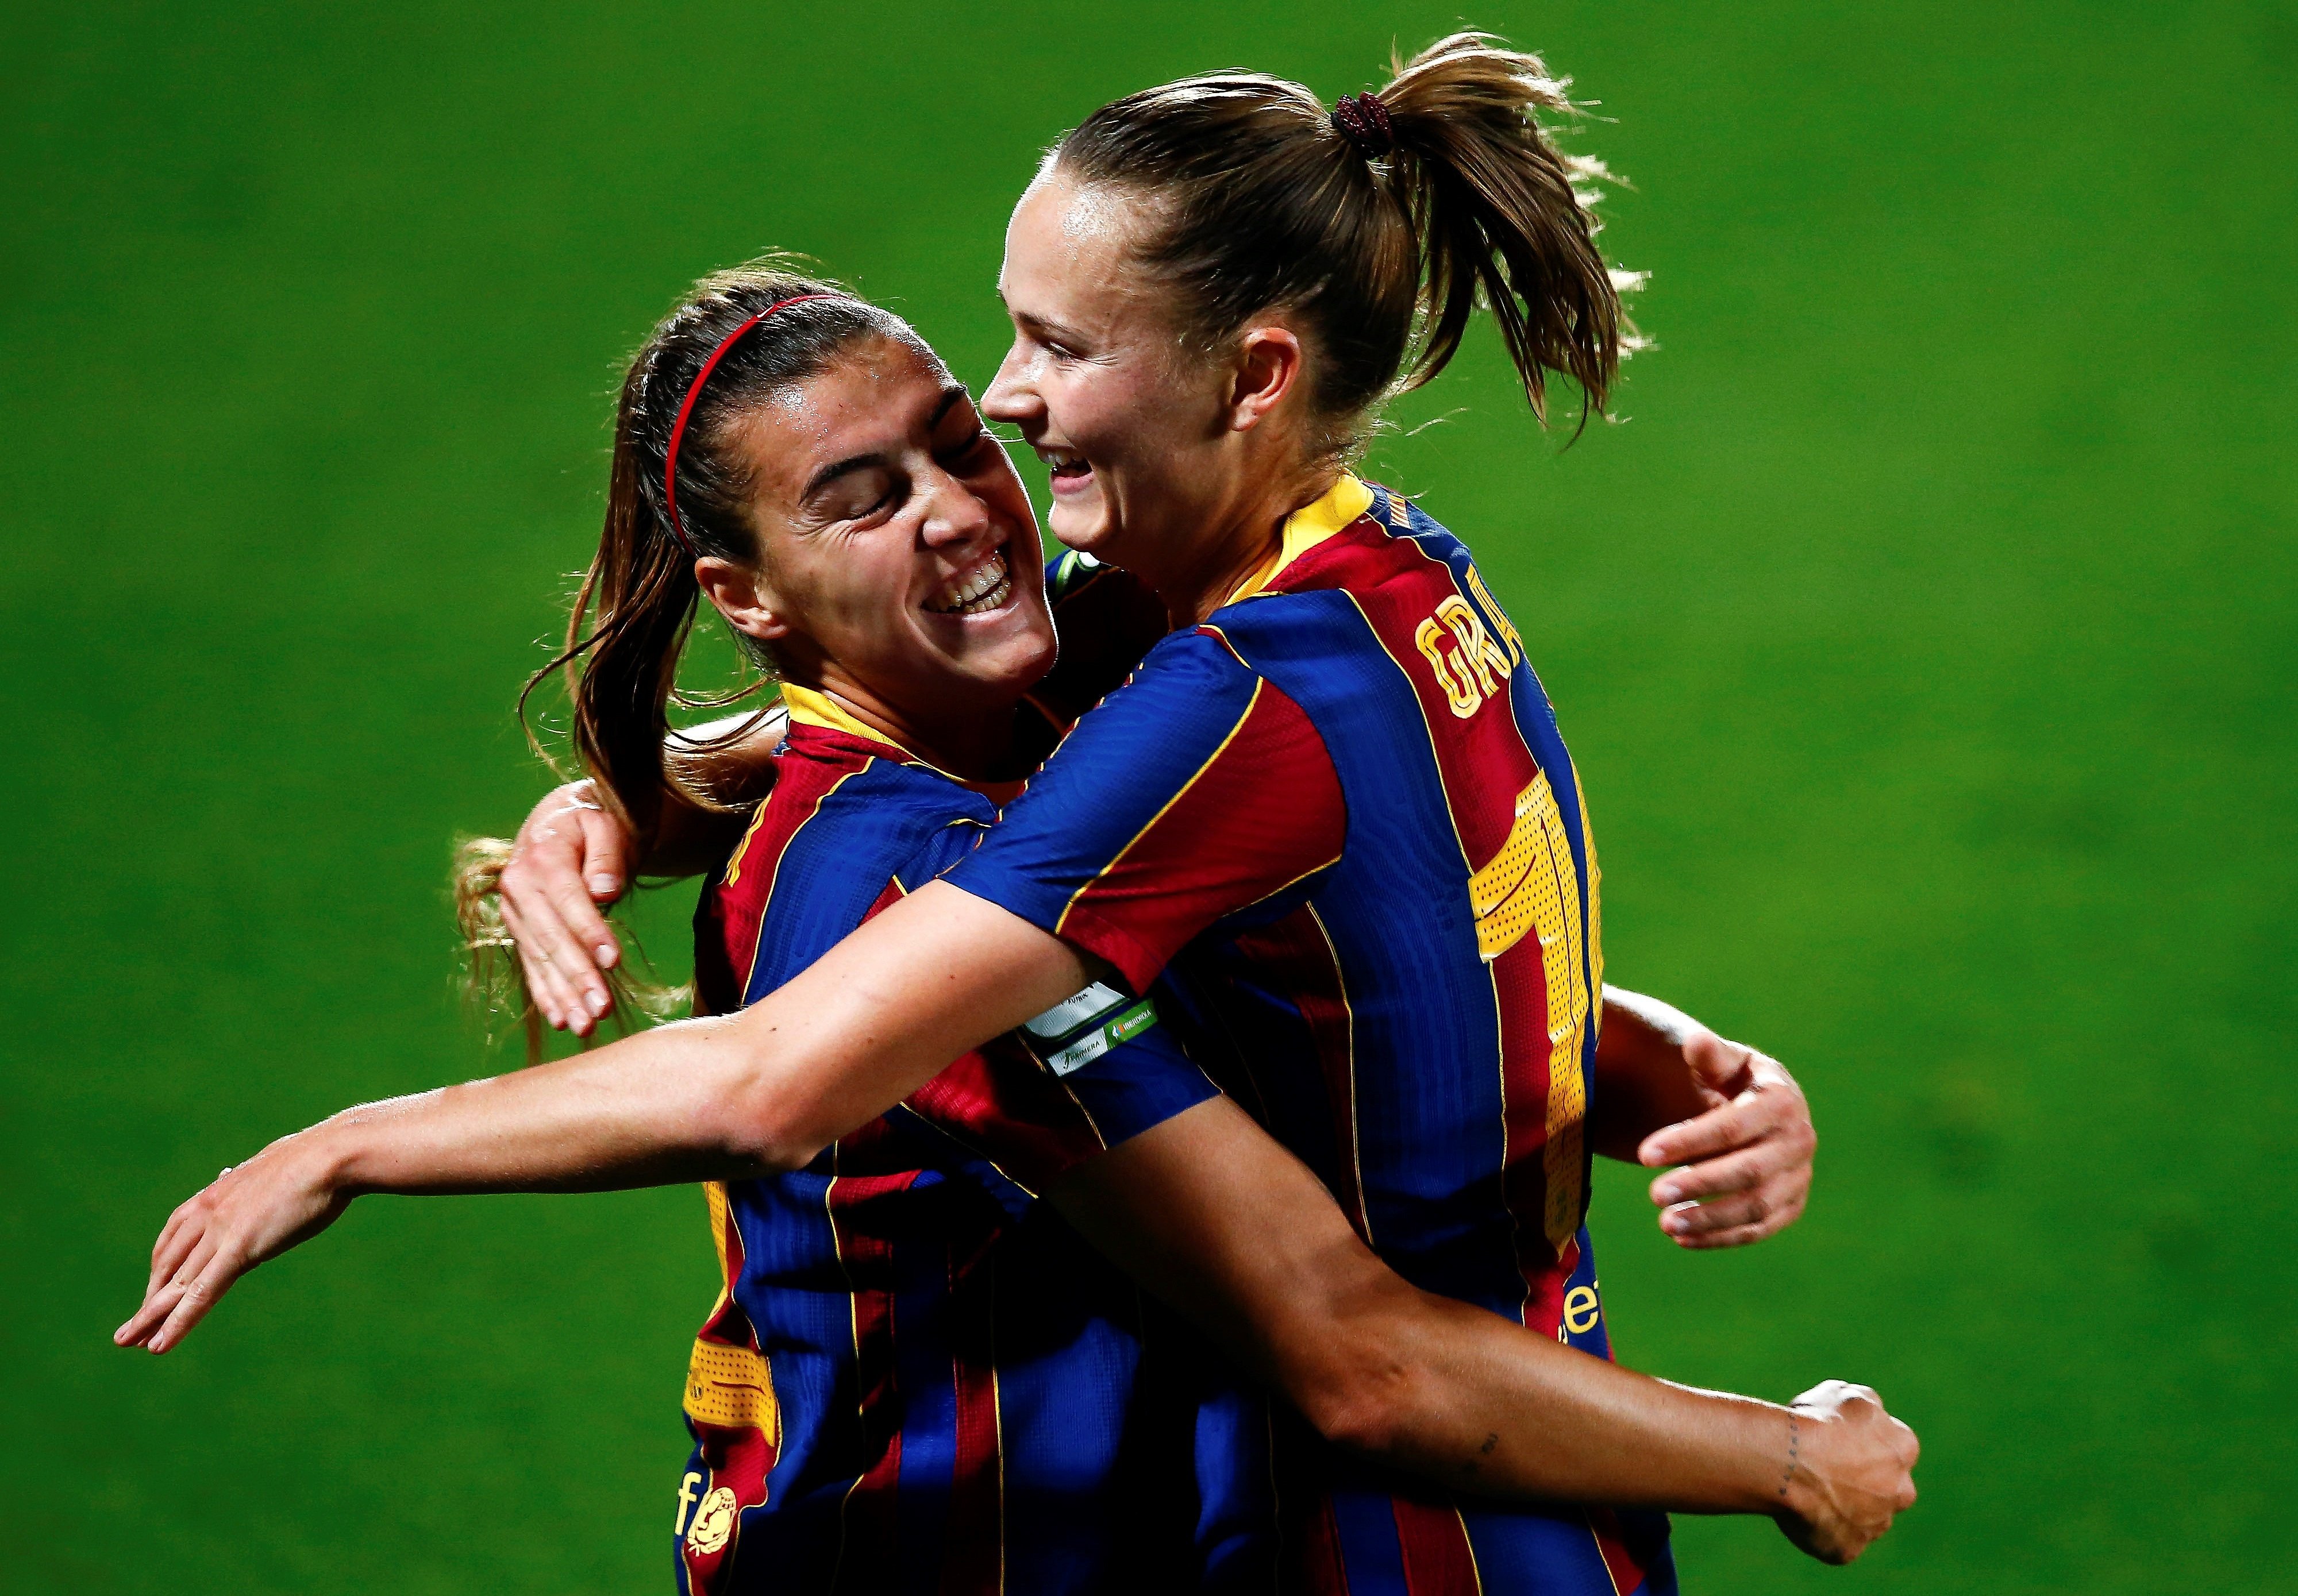 El Barça femení se supera: repàs a l'Atlètic, liderat i rècord (3-0)